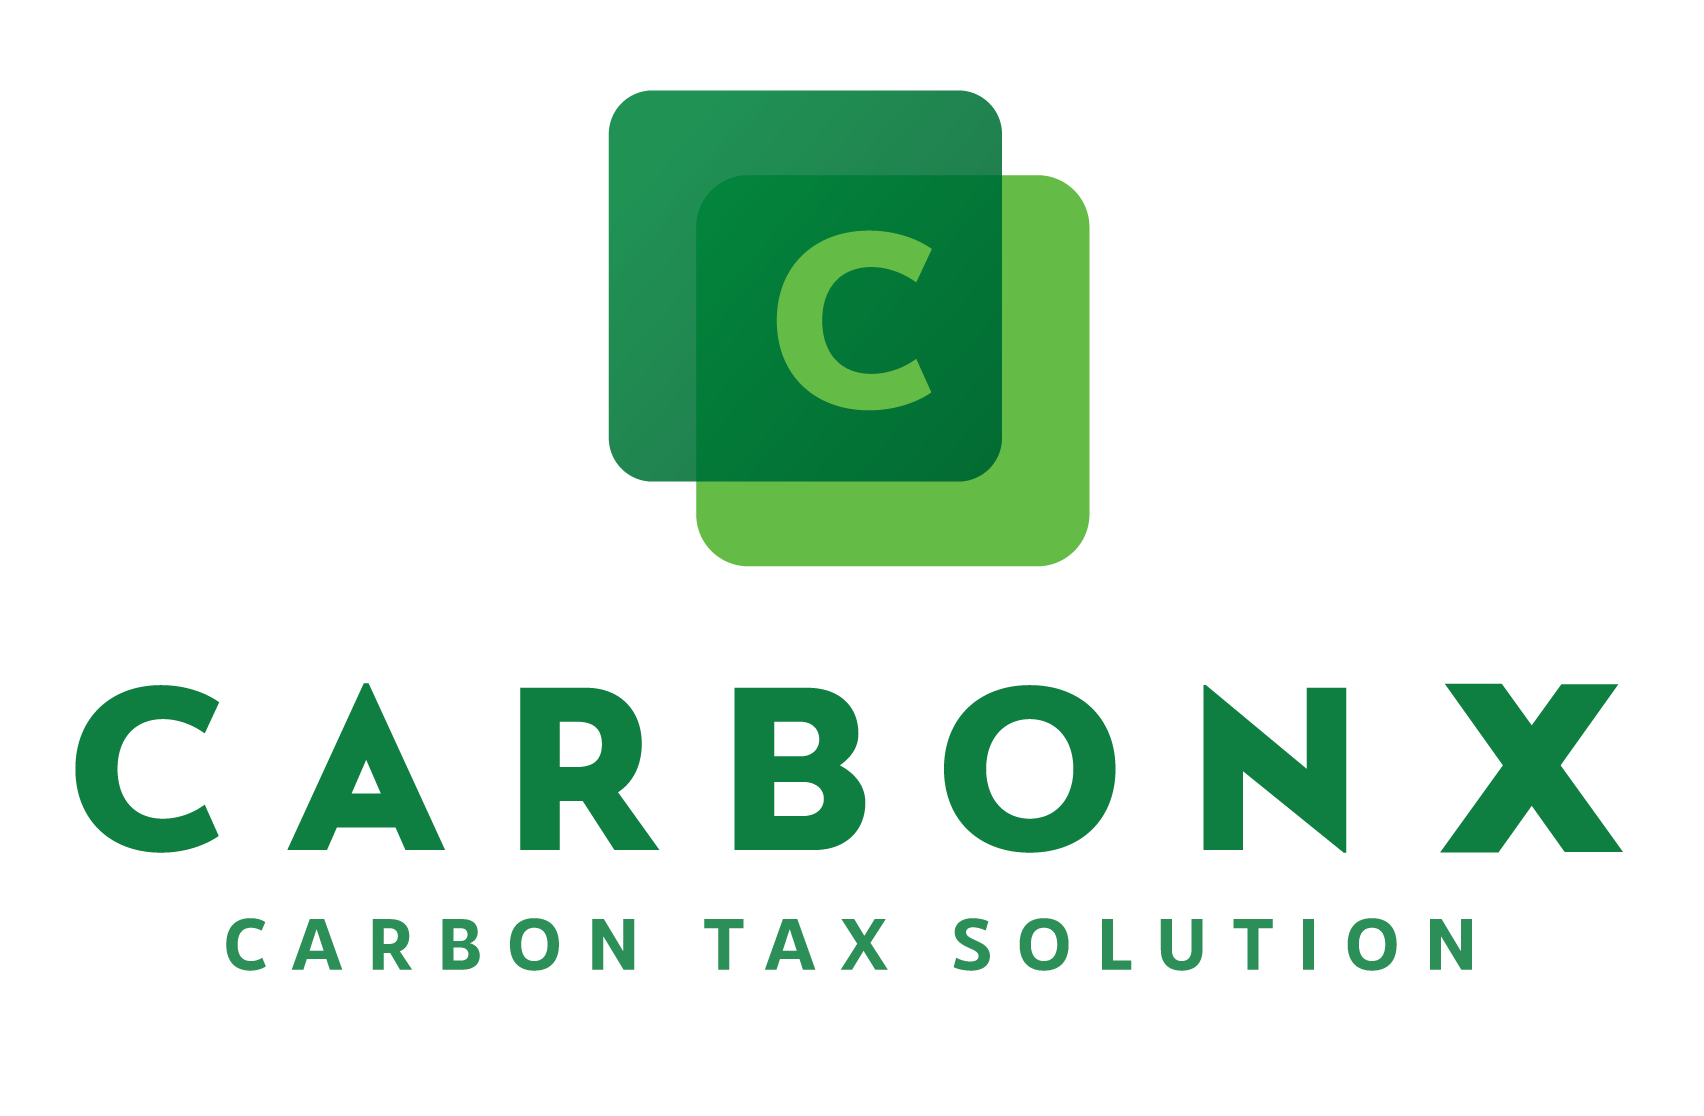 CarbonX - A Carbon Tax Solution